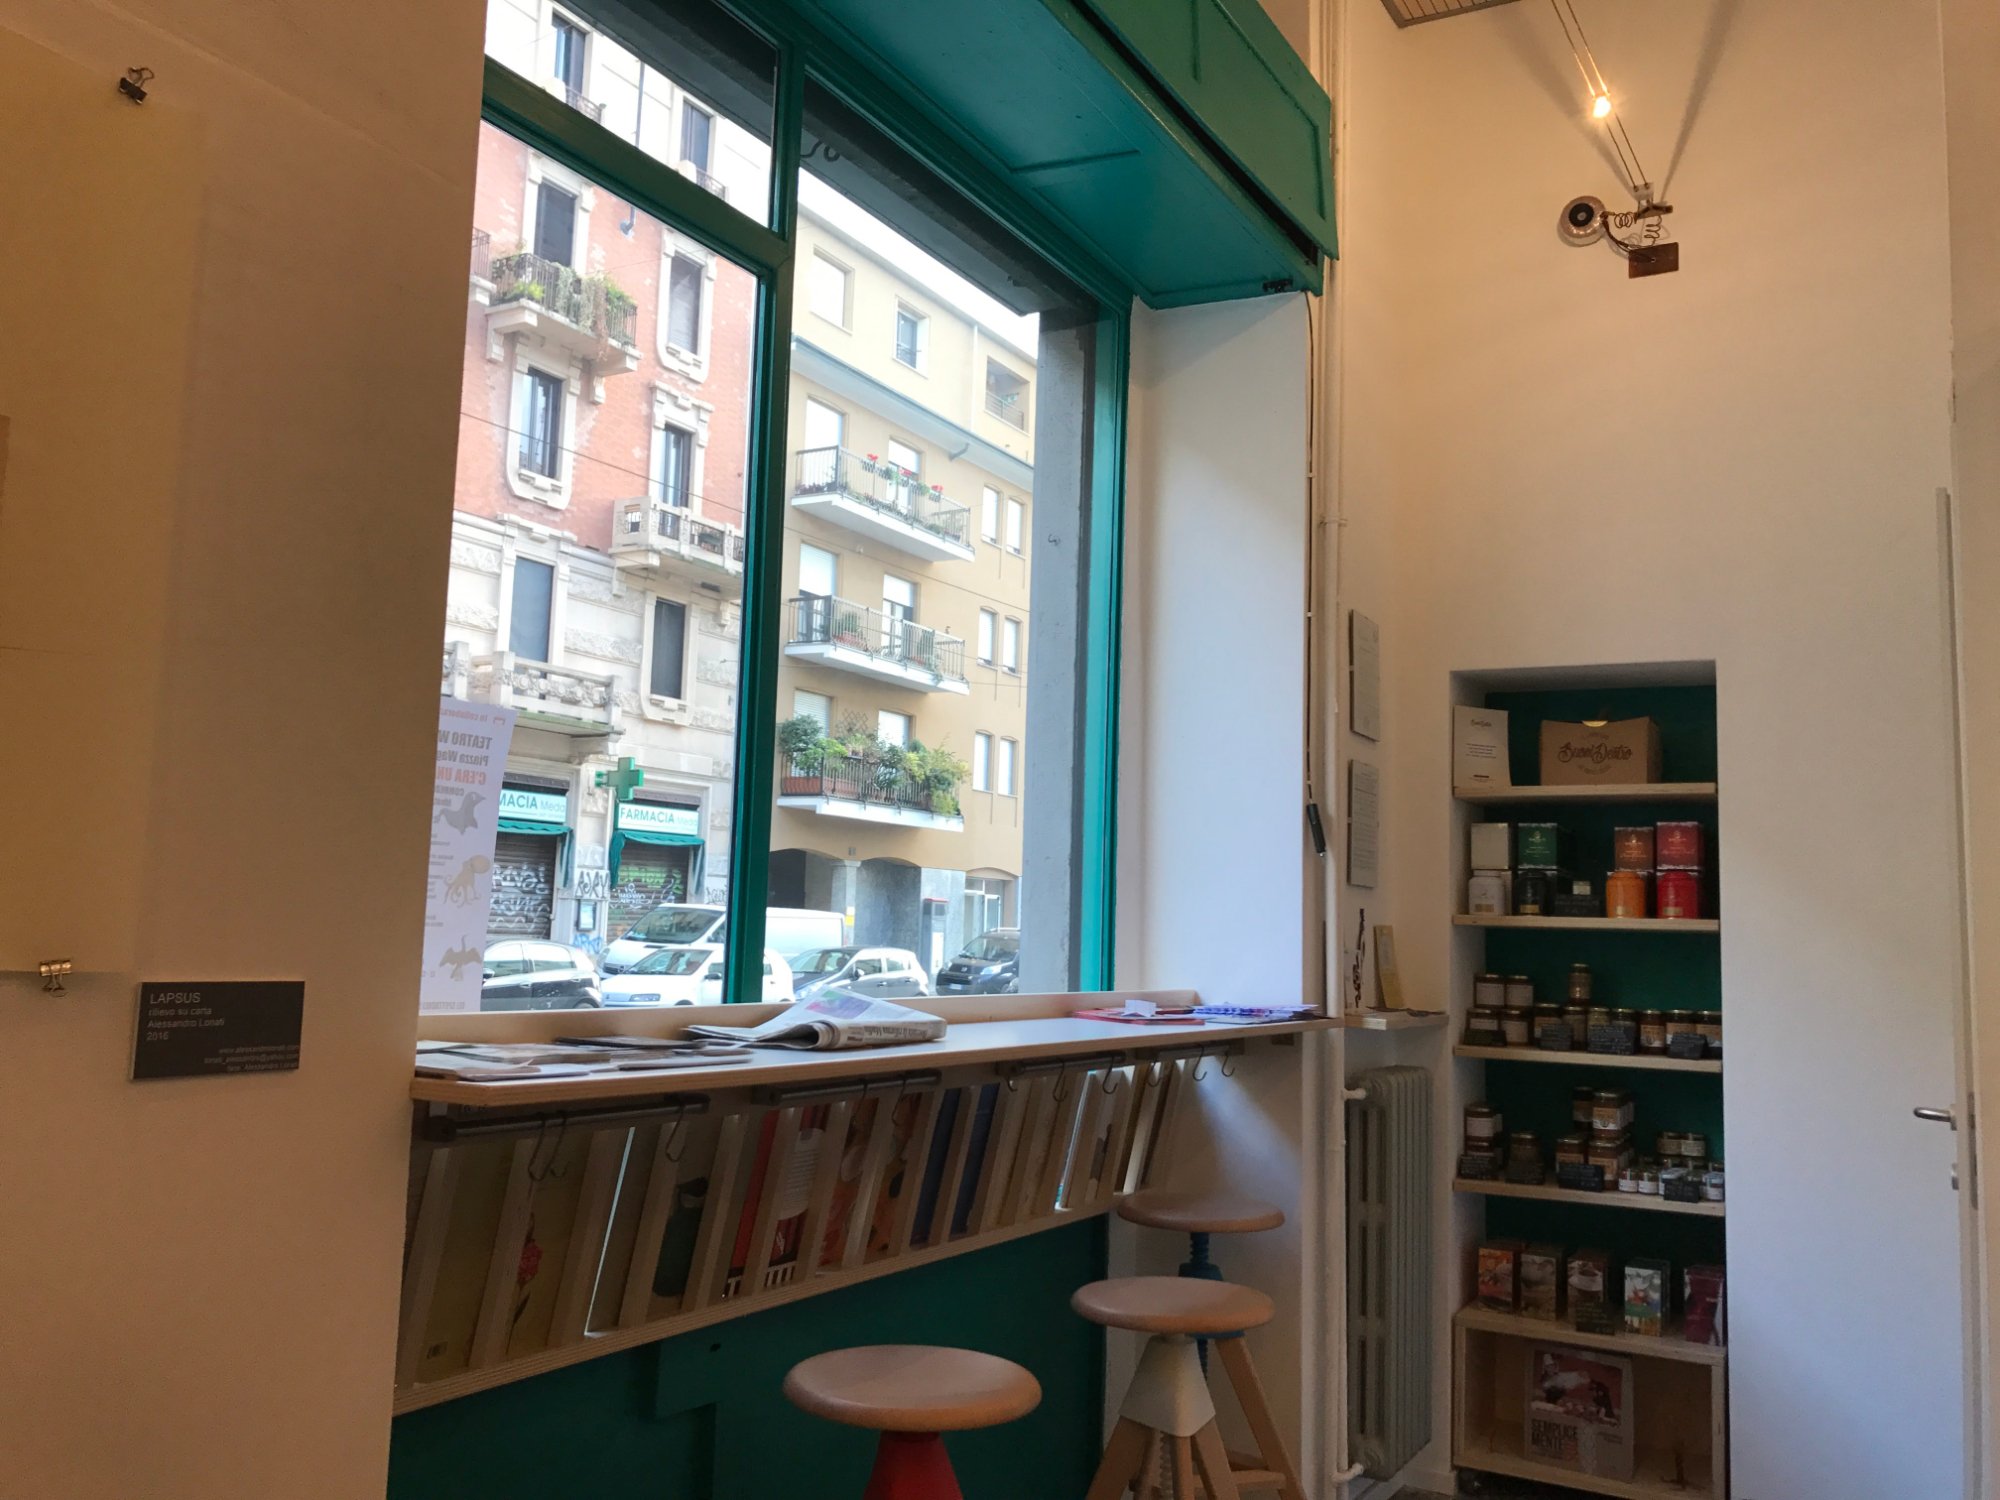 Lapsus Caffe Libreria, Milano